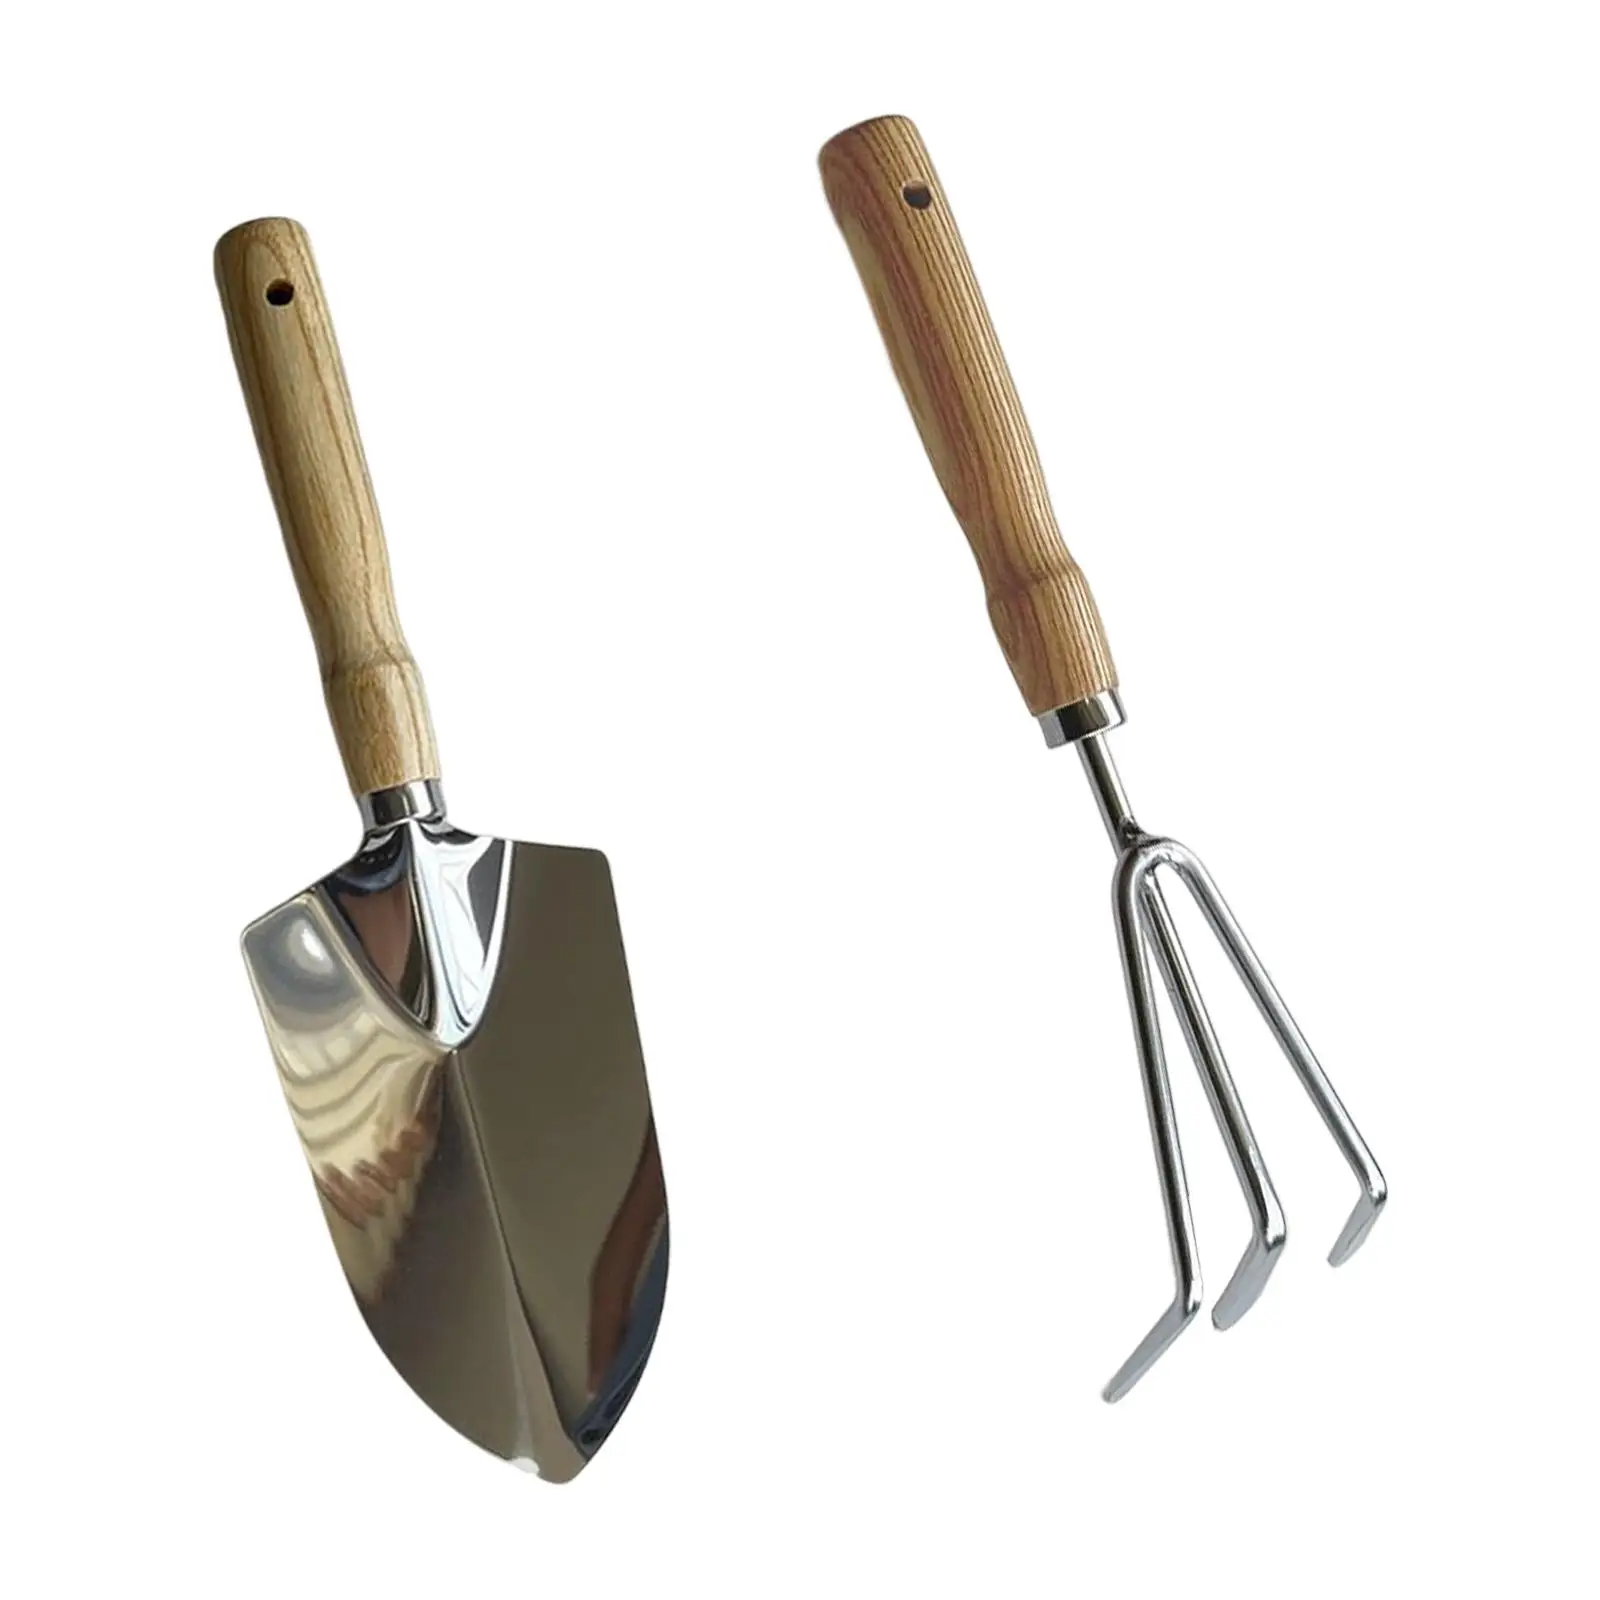 Gardening Tool Gardening Hand Tools Digging Tool for Weeding Loosening Soil